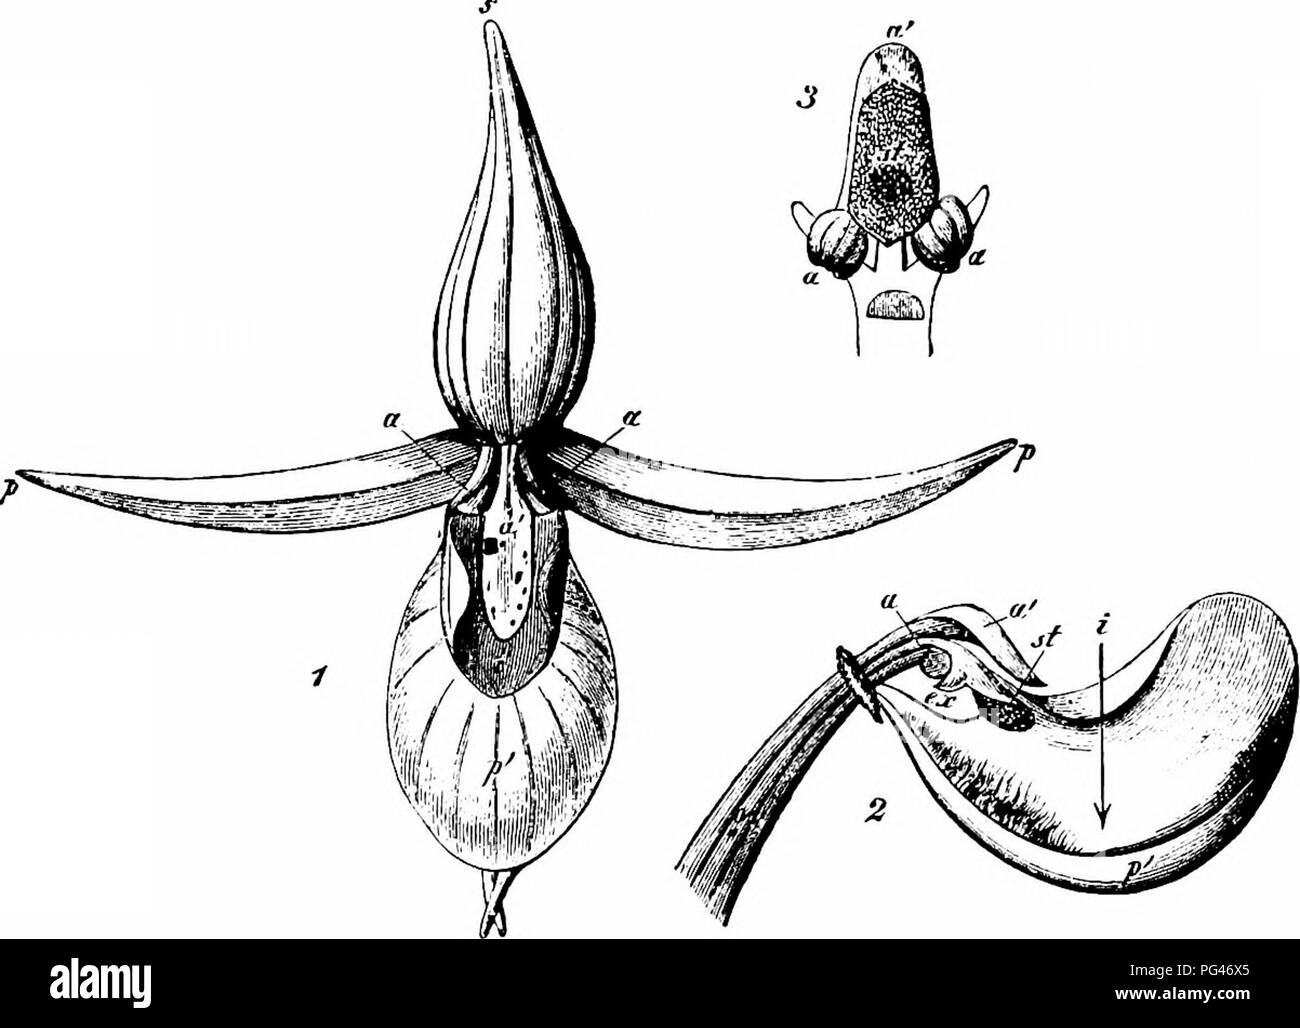 . Handbuch der Blume Bestäubung: auf Hermann Mu?ller Arbeit" die Befruchtung der Blüten durch Insekten". Düngung von Pflanzen. 420 ANGIOSPERMEN - MONOCOTYLEDONES 2652. C. Calceolus L. (Herm. MuUer, 'Fertlsn.", s. 539; Baxter, 'Fertlzn. von Cypripedium '; Webster, Trans. Bot. Soc, Edinburgh, XVI, 1886, S. 357-60; Darwin, A.a.o., s. 226; Kerner, "Nat. Hist. PI., "Eng. Hrsg. I, II, S. 245, 249.) - In Blüten dieser Spezies, die leicht zurück labellum ist gelb, und der Rest der Blütenhülle Blätter lila. Diese Färbung und ein Geruch von Nektar locken kleine Bienen der g Stockfoto